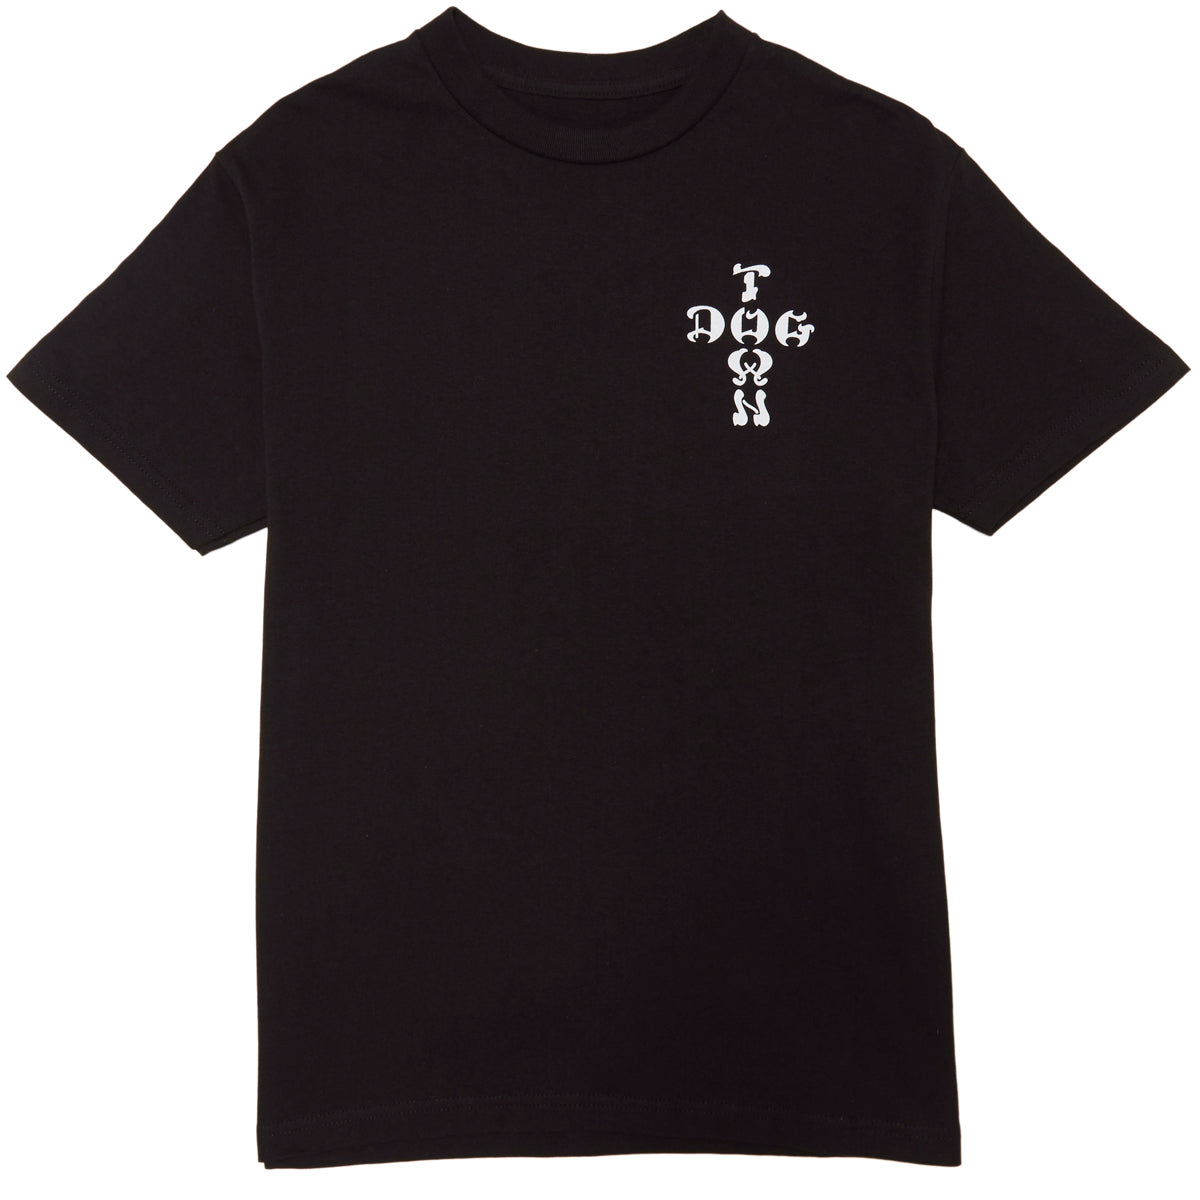 Dogtown OG Bull Dog T-Shirt - Black image 2